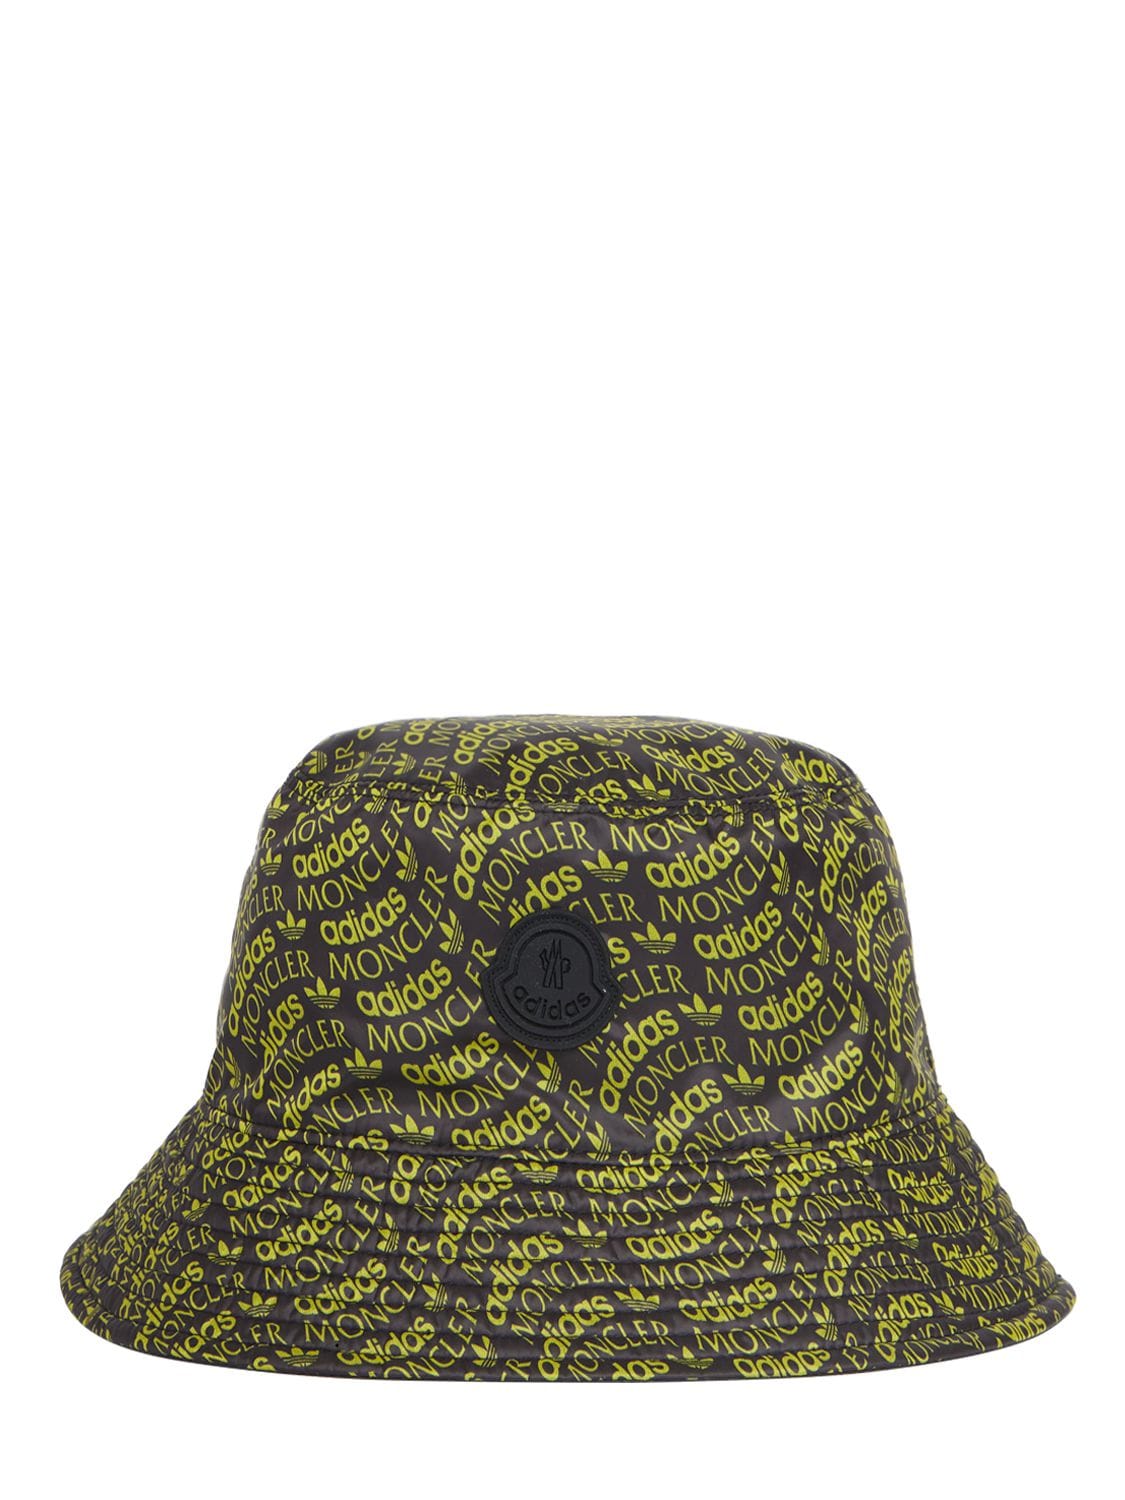 Moncler Genius Women's Moncler X Adidas Originals Bucket Hat In Yellow Black